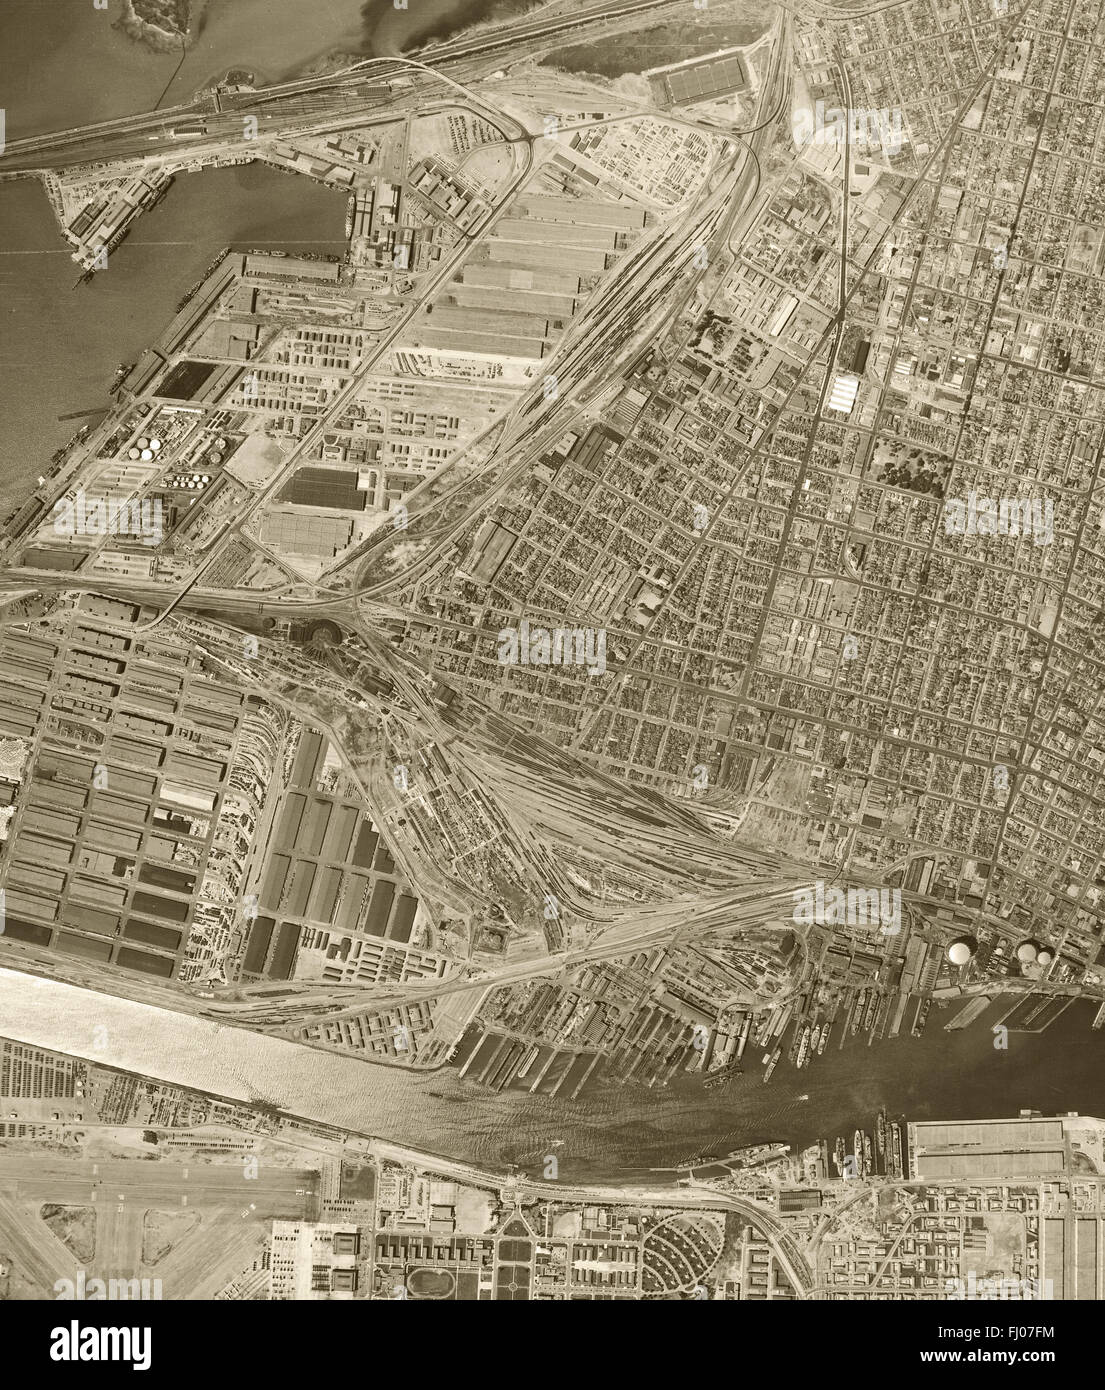 Fotografía aérea del histórico puerto de Oakland, Oakland, California, 1946 Foto de stock